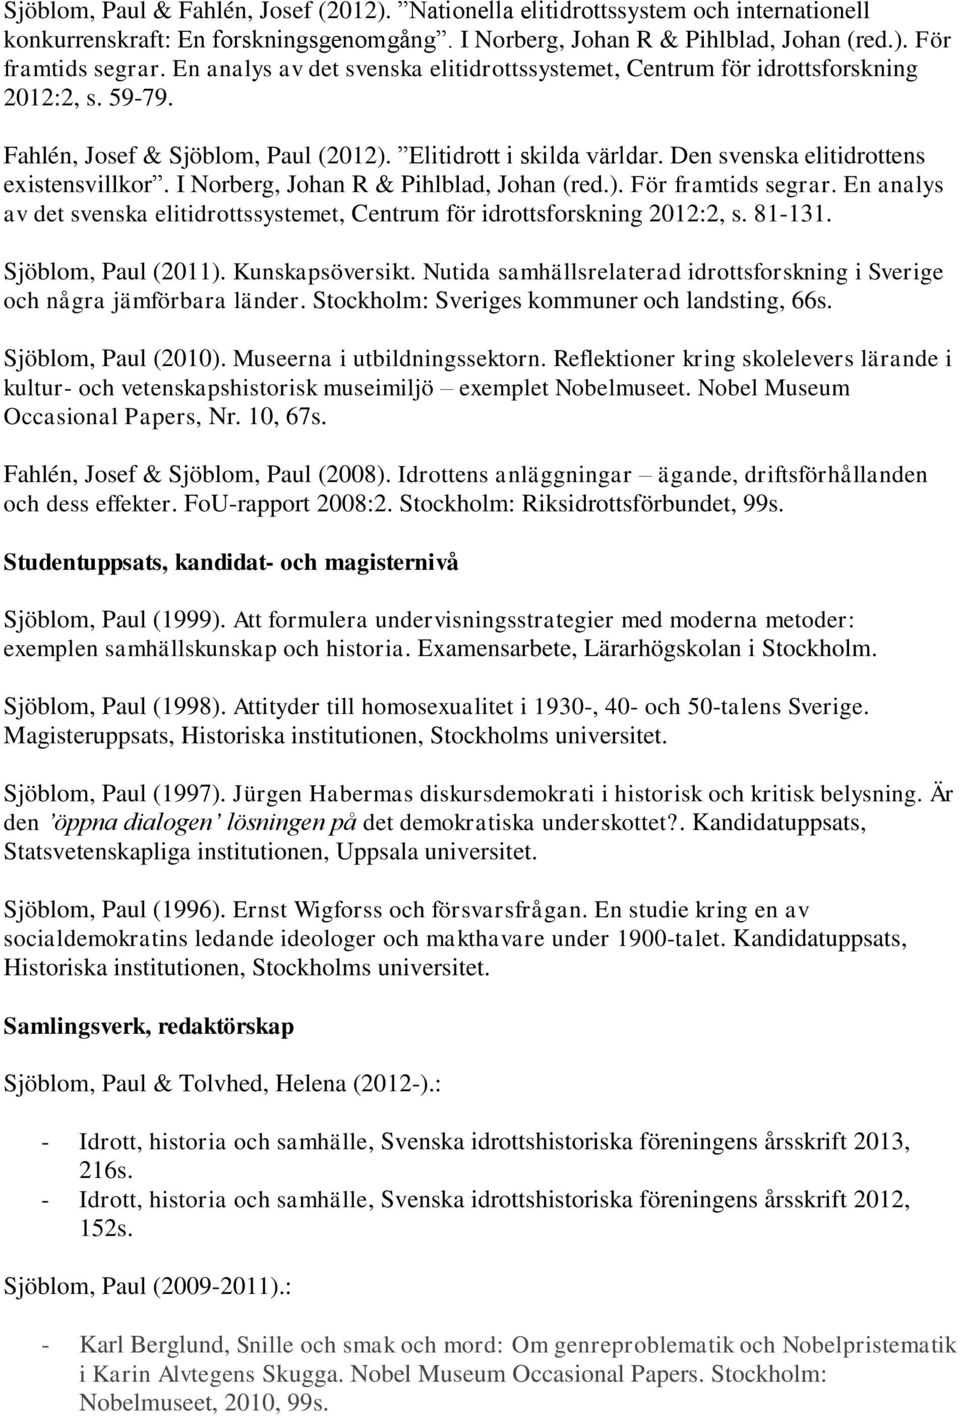 Den svenska elitidrottens existensvillkor. I Norberg, Johan R & Pihlblad, Johan (red.). För framtids segrar. En analys av det svenska elitidrottssystemet, Centrum för idrottsforskning 2012:2, s.